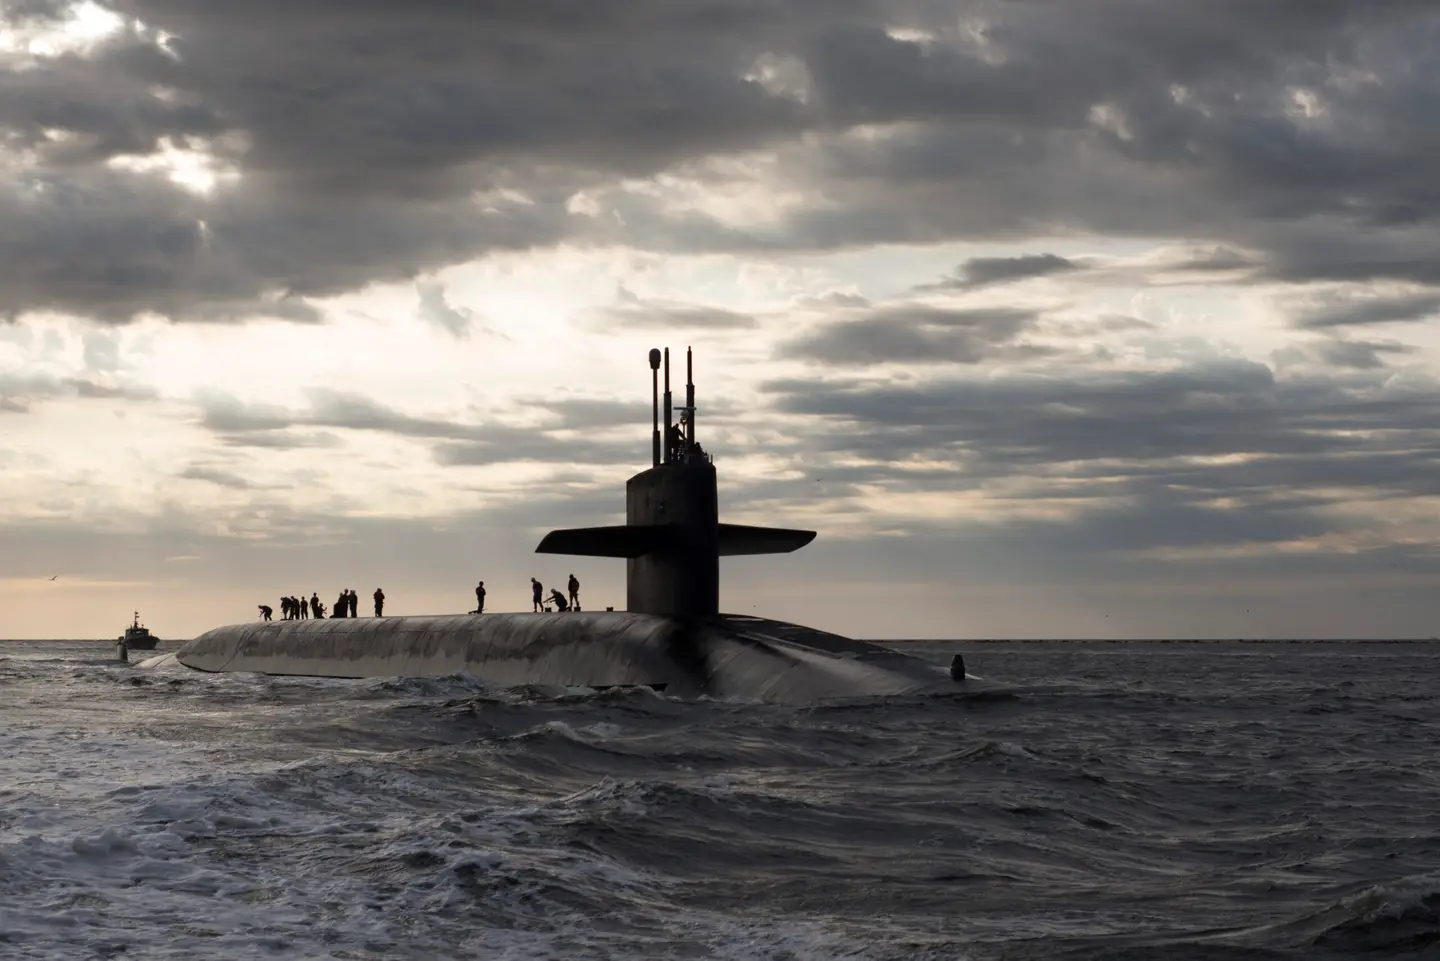 Les États-Unis enverront à la République de Corée des sous-marins de classe Ohio équipés de missiles balistiques Trident II et d'ogives nucléaires d'une portée de lancement pouvant atteindre 12 000 km.